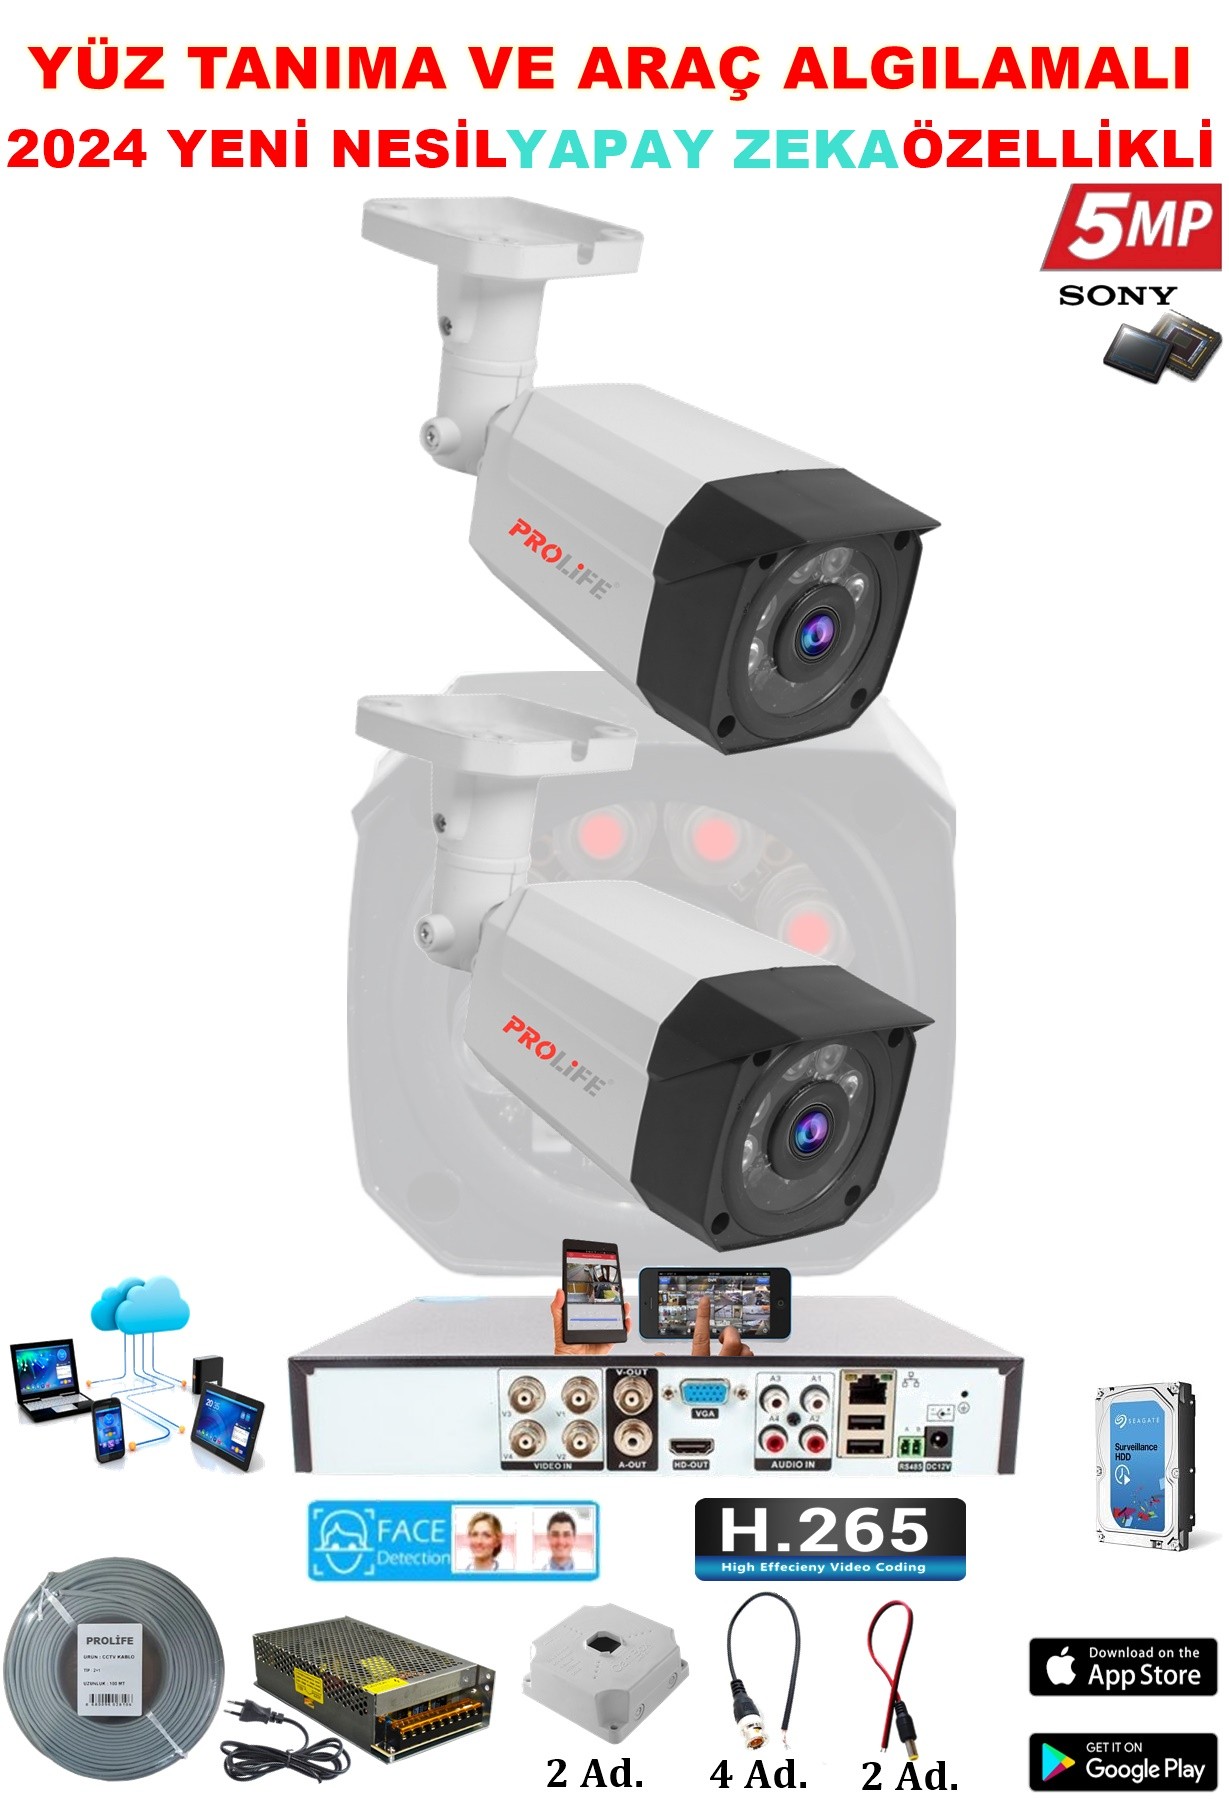 2 Kameralı 5 MP Gece Görüşlü Yapay Zeka Yüz Tanıma ve Araç Algılamalı Olay Anı Bildirimli Güvenlik Kamerası Seti